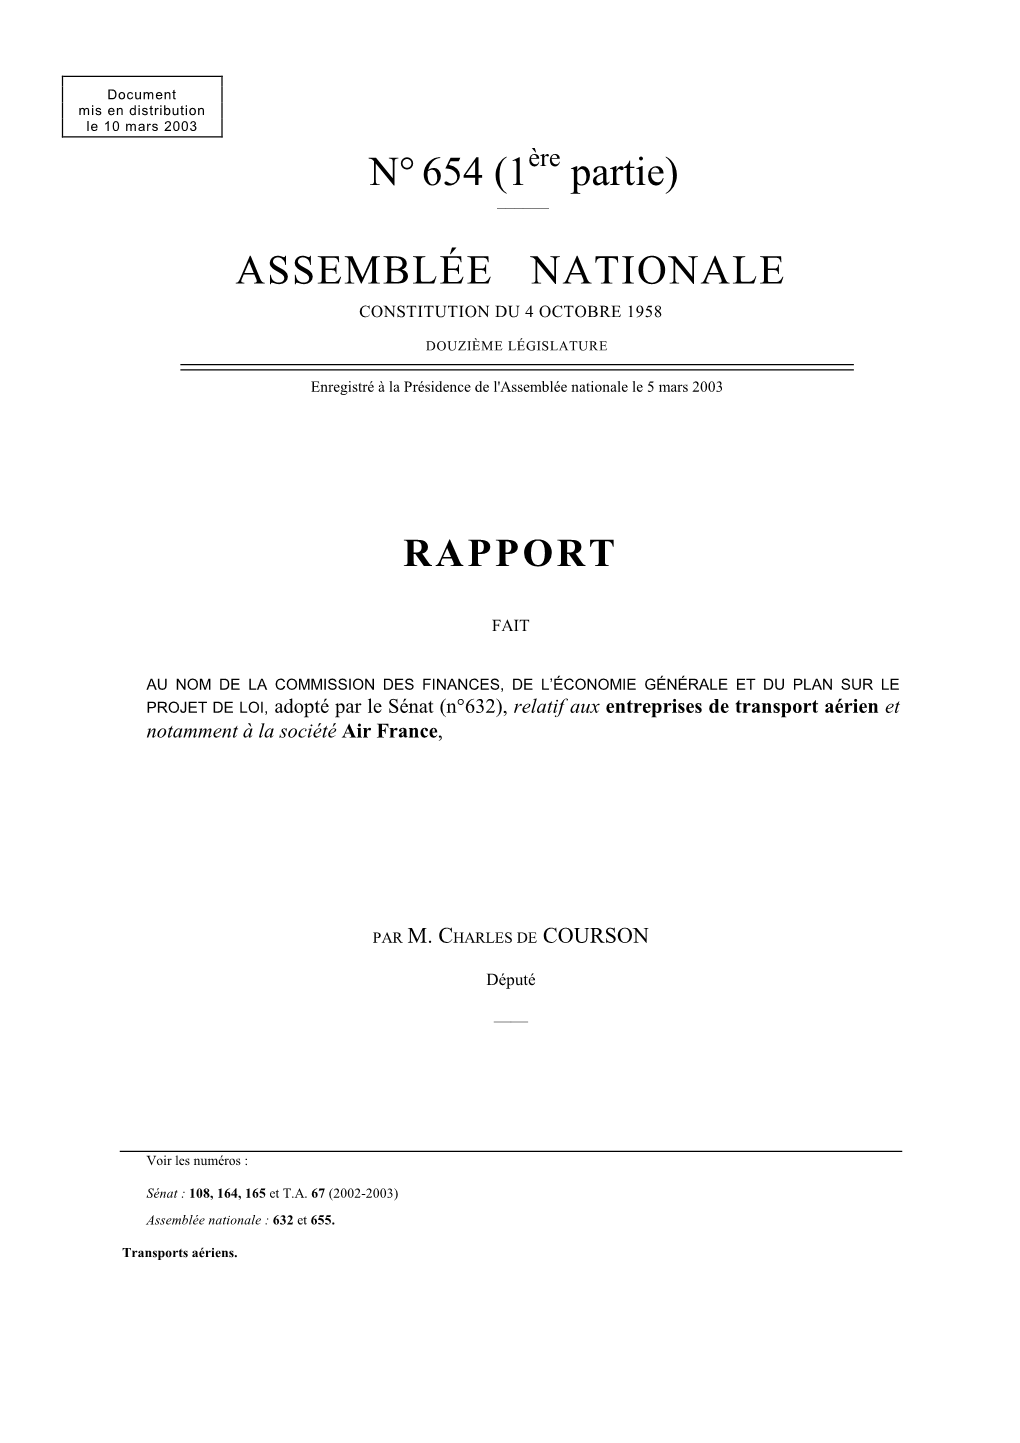 N°654 (1 Partie) ASSEMBLÉE NATIONALE